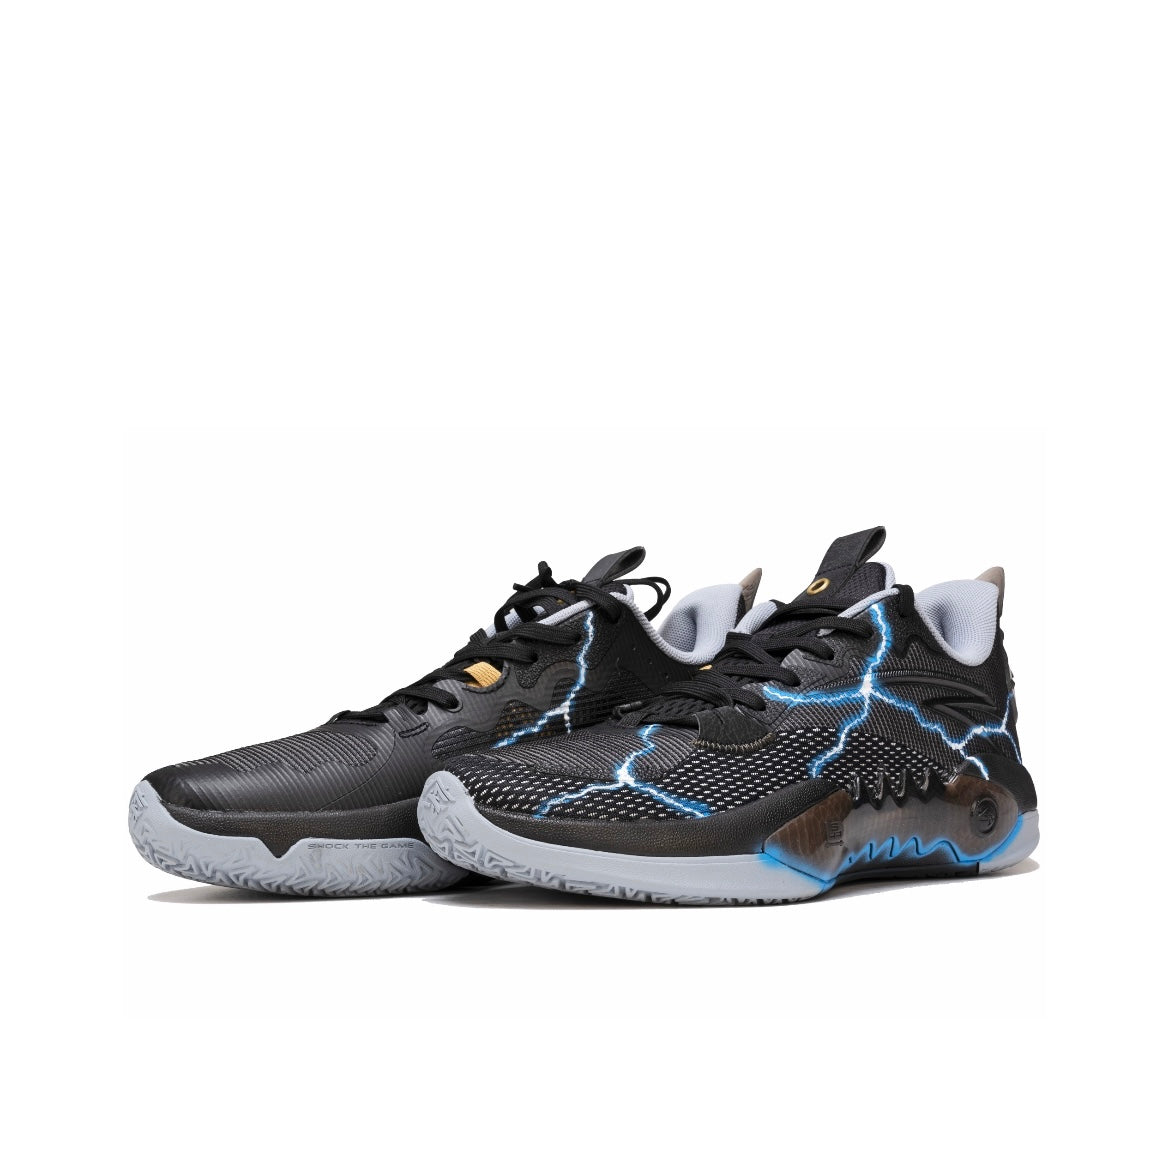 （Custom sneakers）Kyrie Irving x Anta Shock Wave 5 TD - Lightning